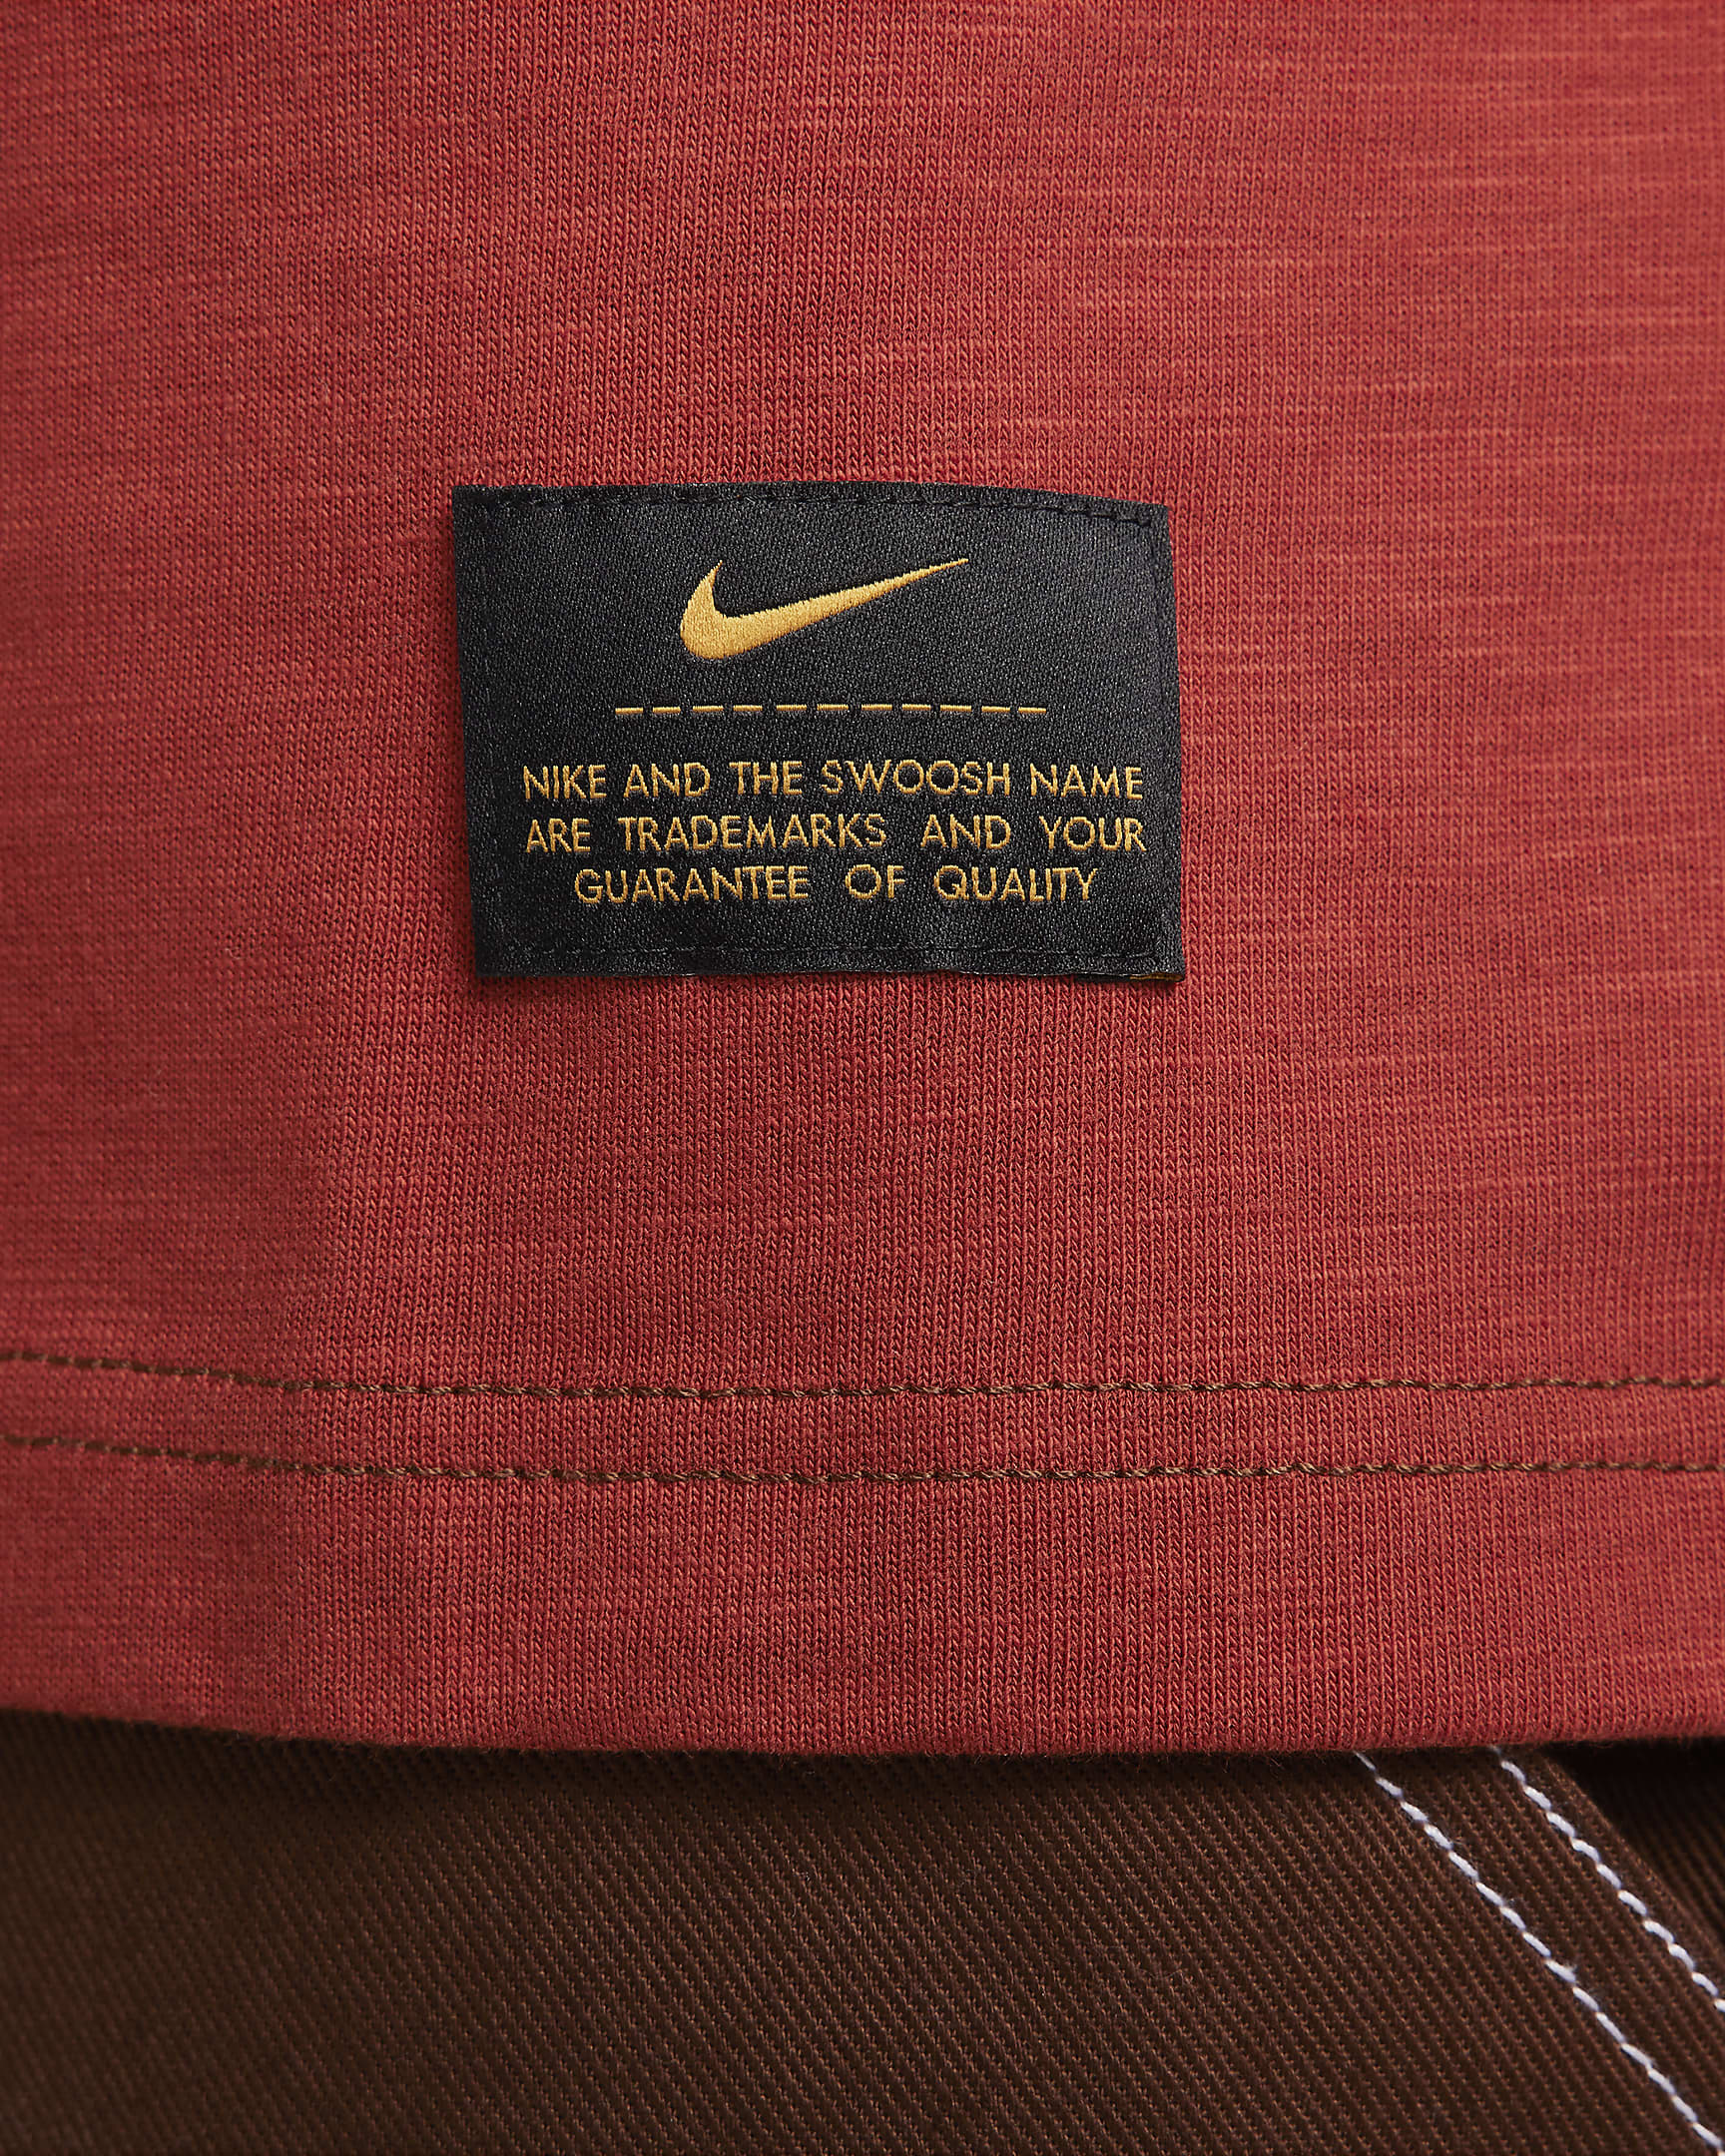 Nike Life Men's Short-Sleeve Knit Top. Nike.com